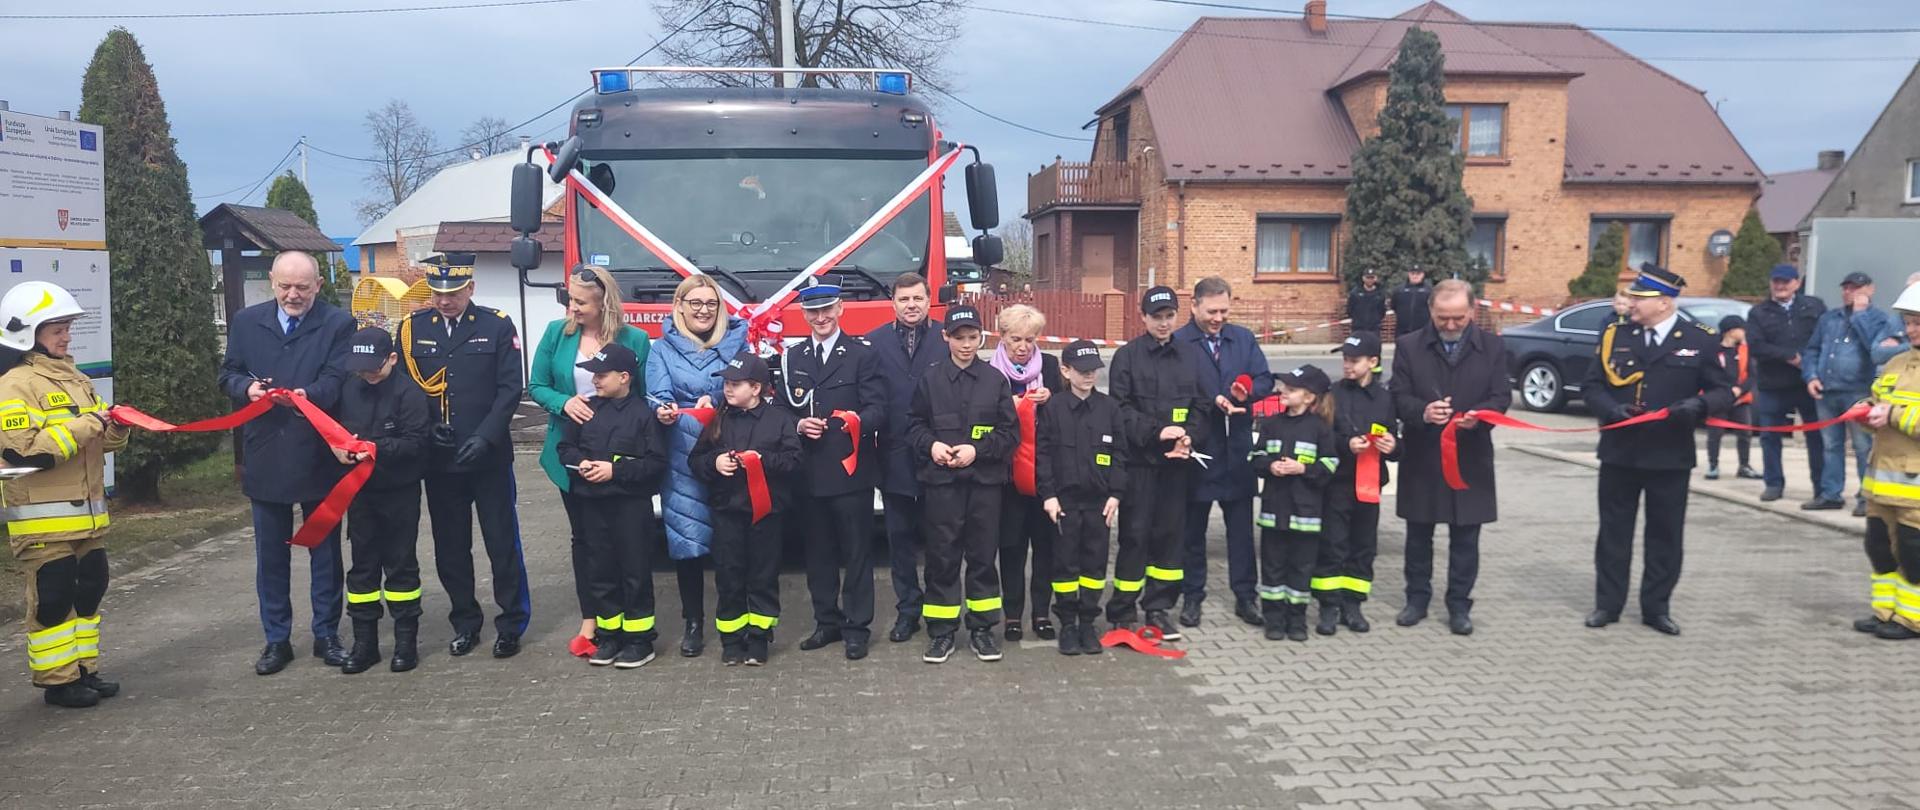 Zaproszeni goście wraz z młodzieżową drużyną pożarniczą stojący przed samochodem strażackim i przecinający czerwoną wstęgę. W tle zabudowania i inni strażacy.